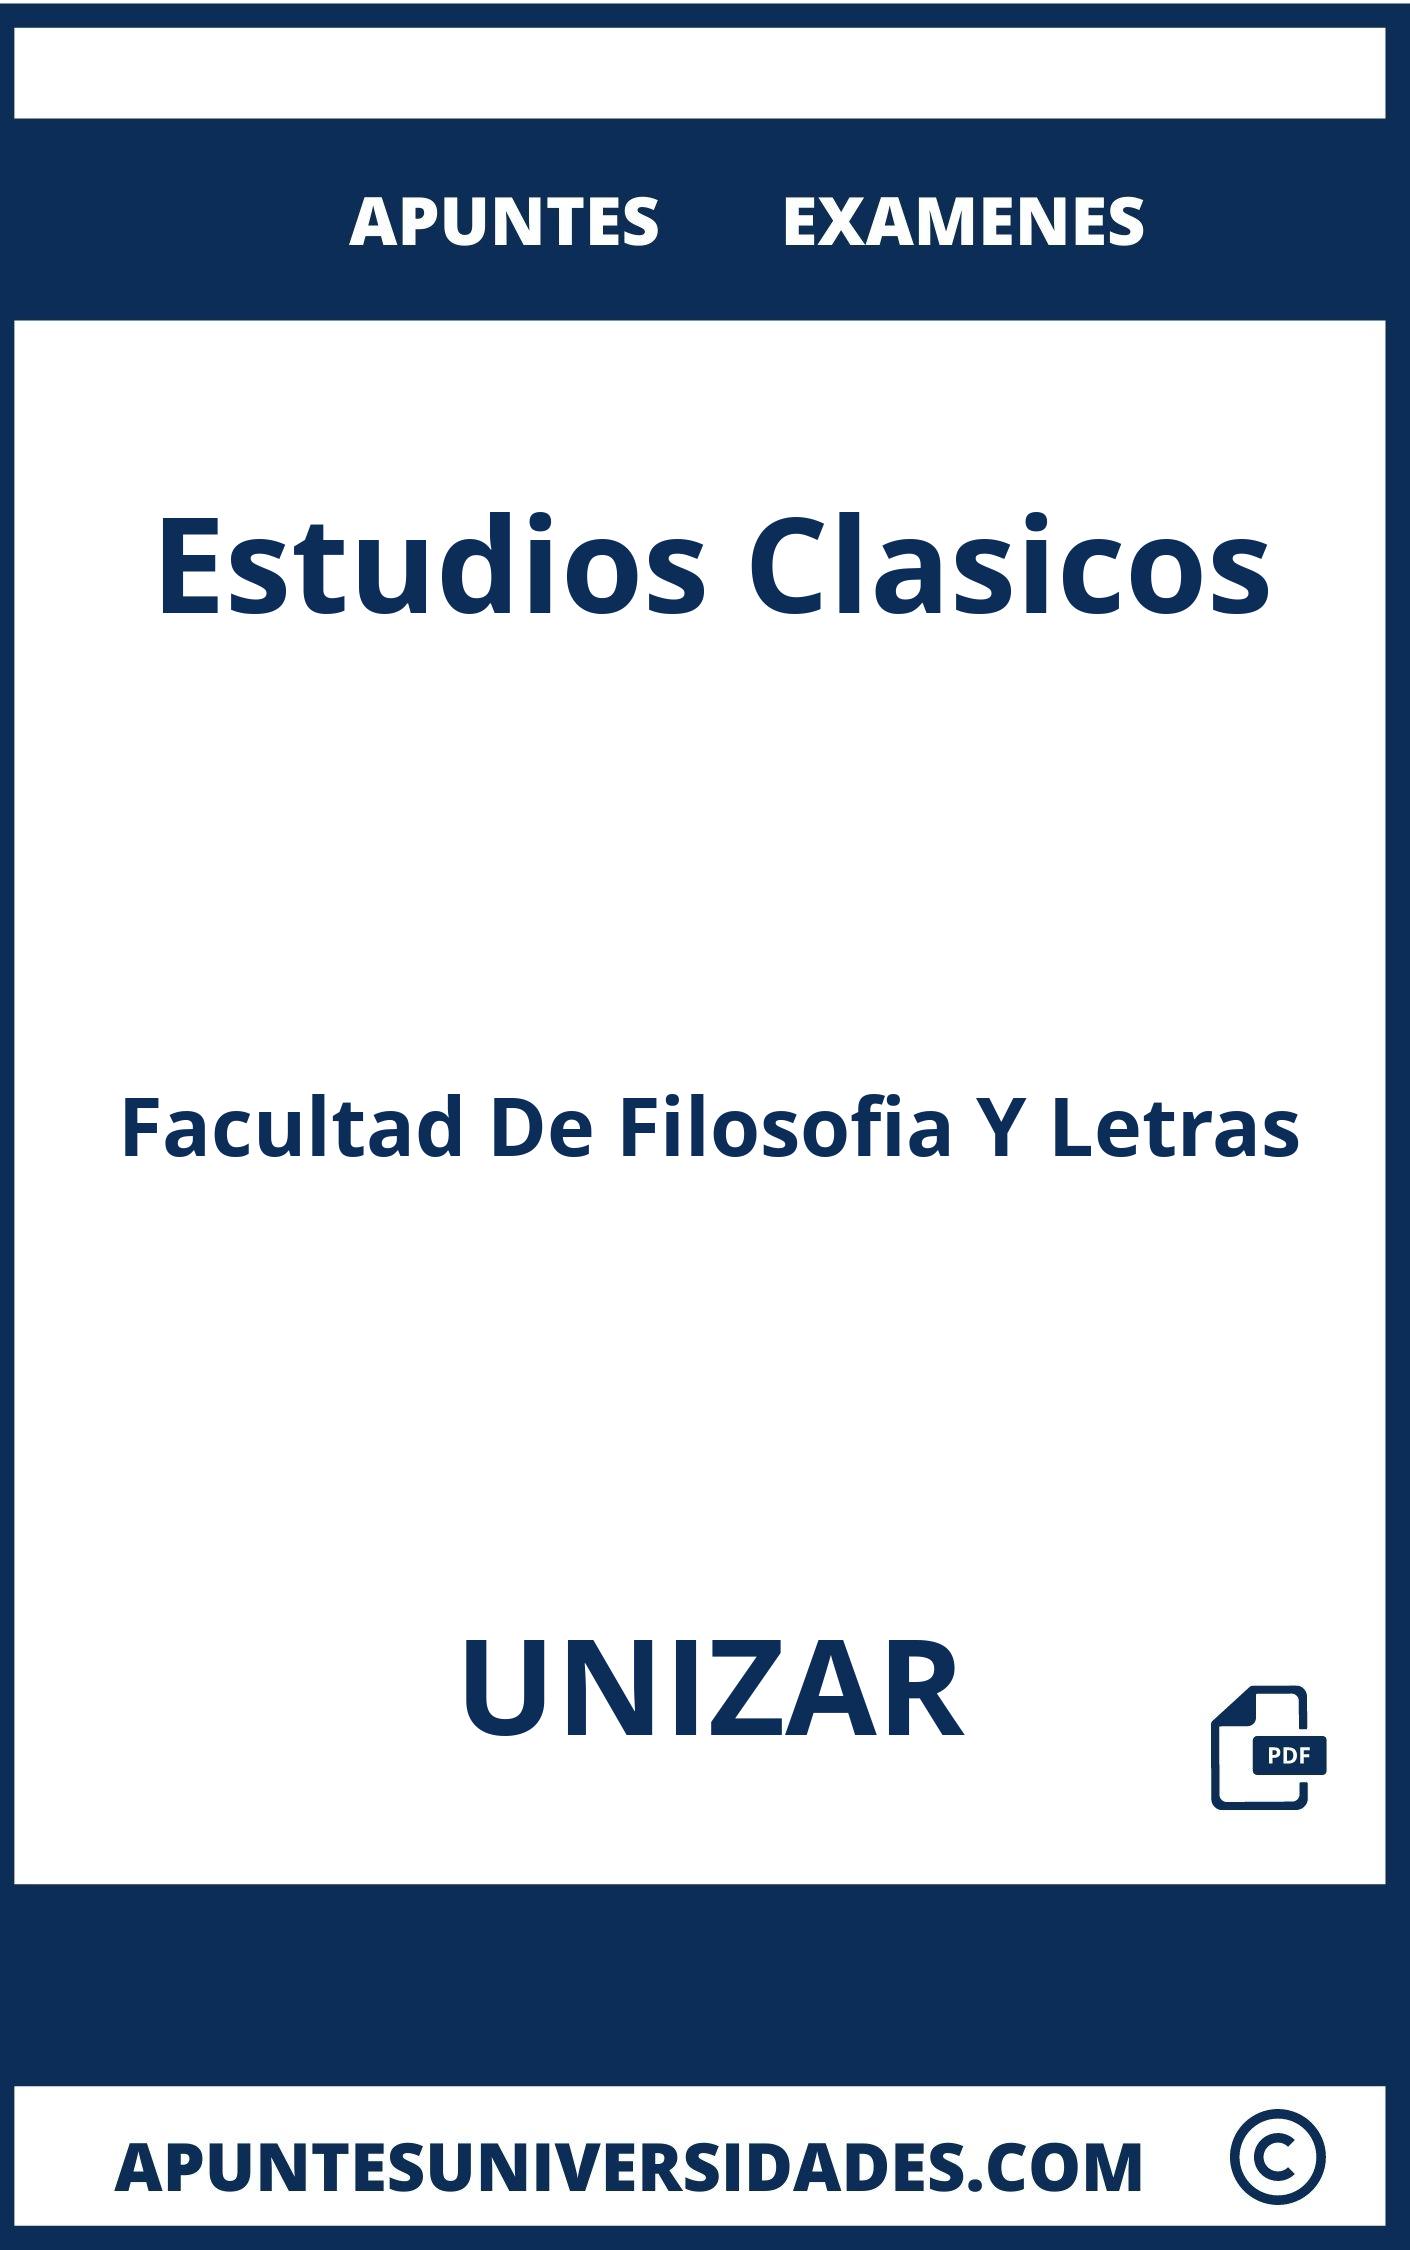 Apuntes y Examenes Estudios Clasicos UNIZAR